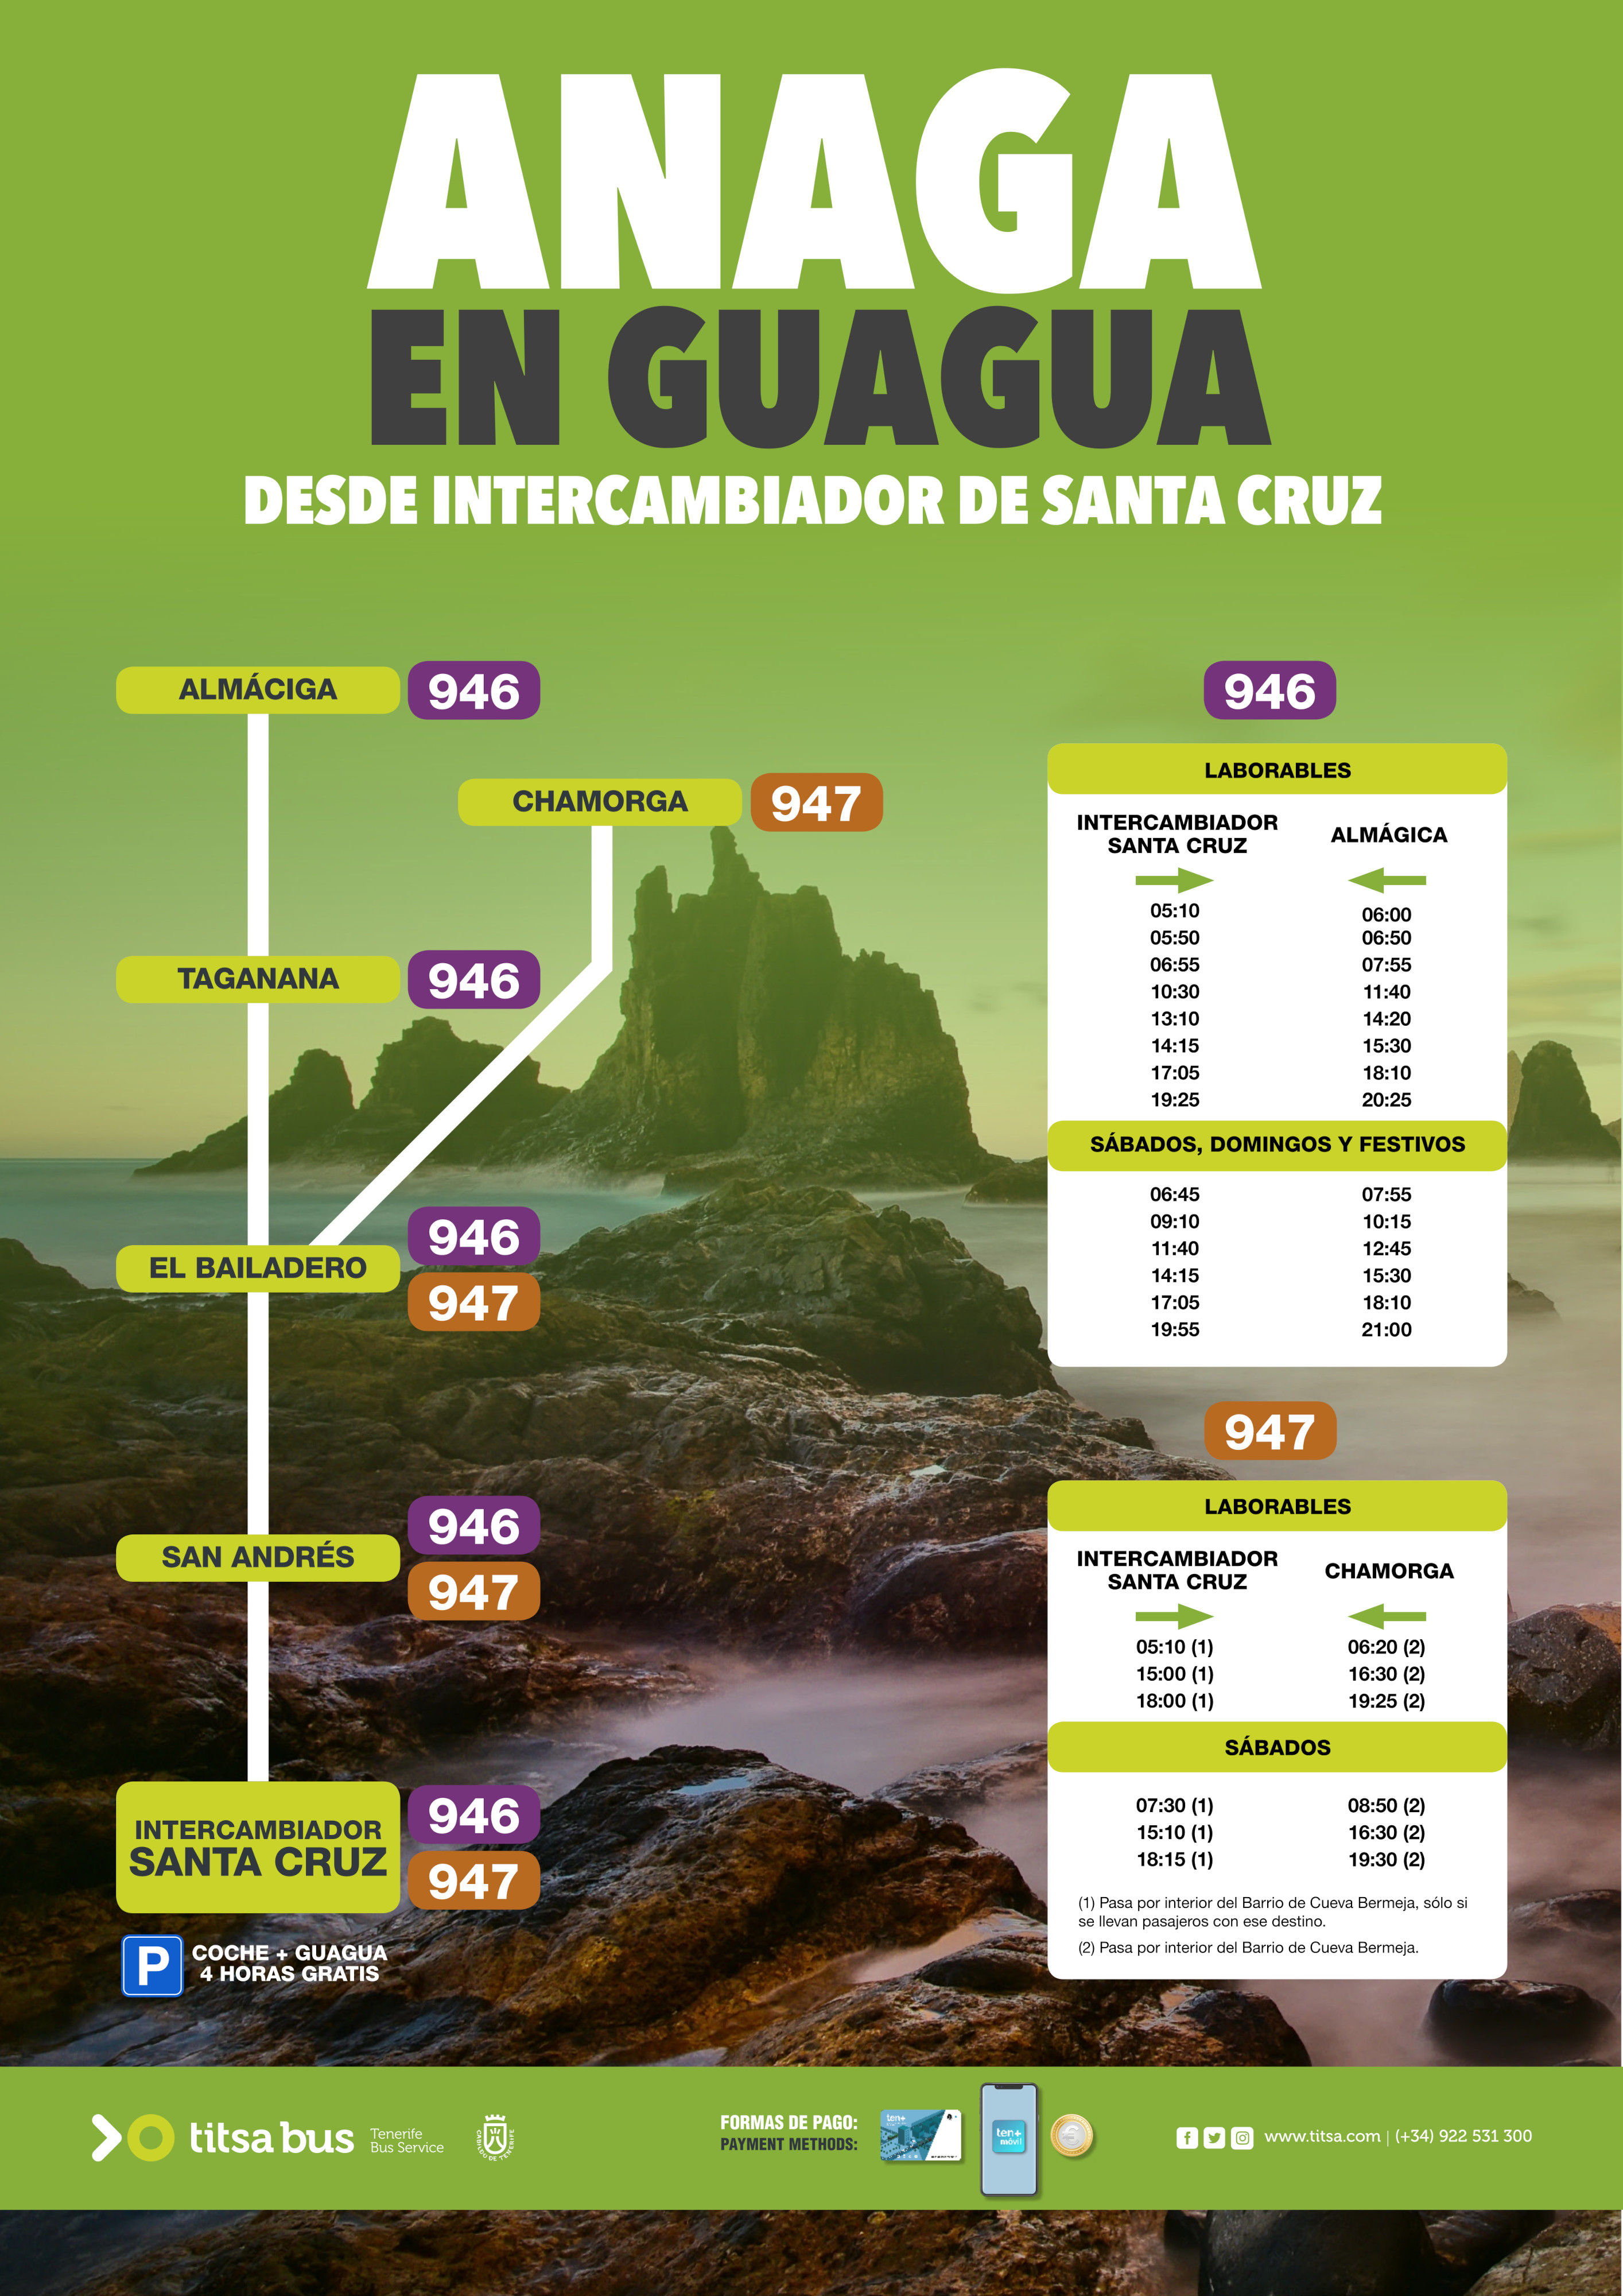 Anaga en Guagua desde el Intercambiador de Santa Cruz